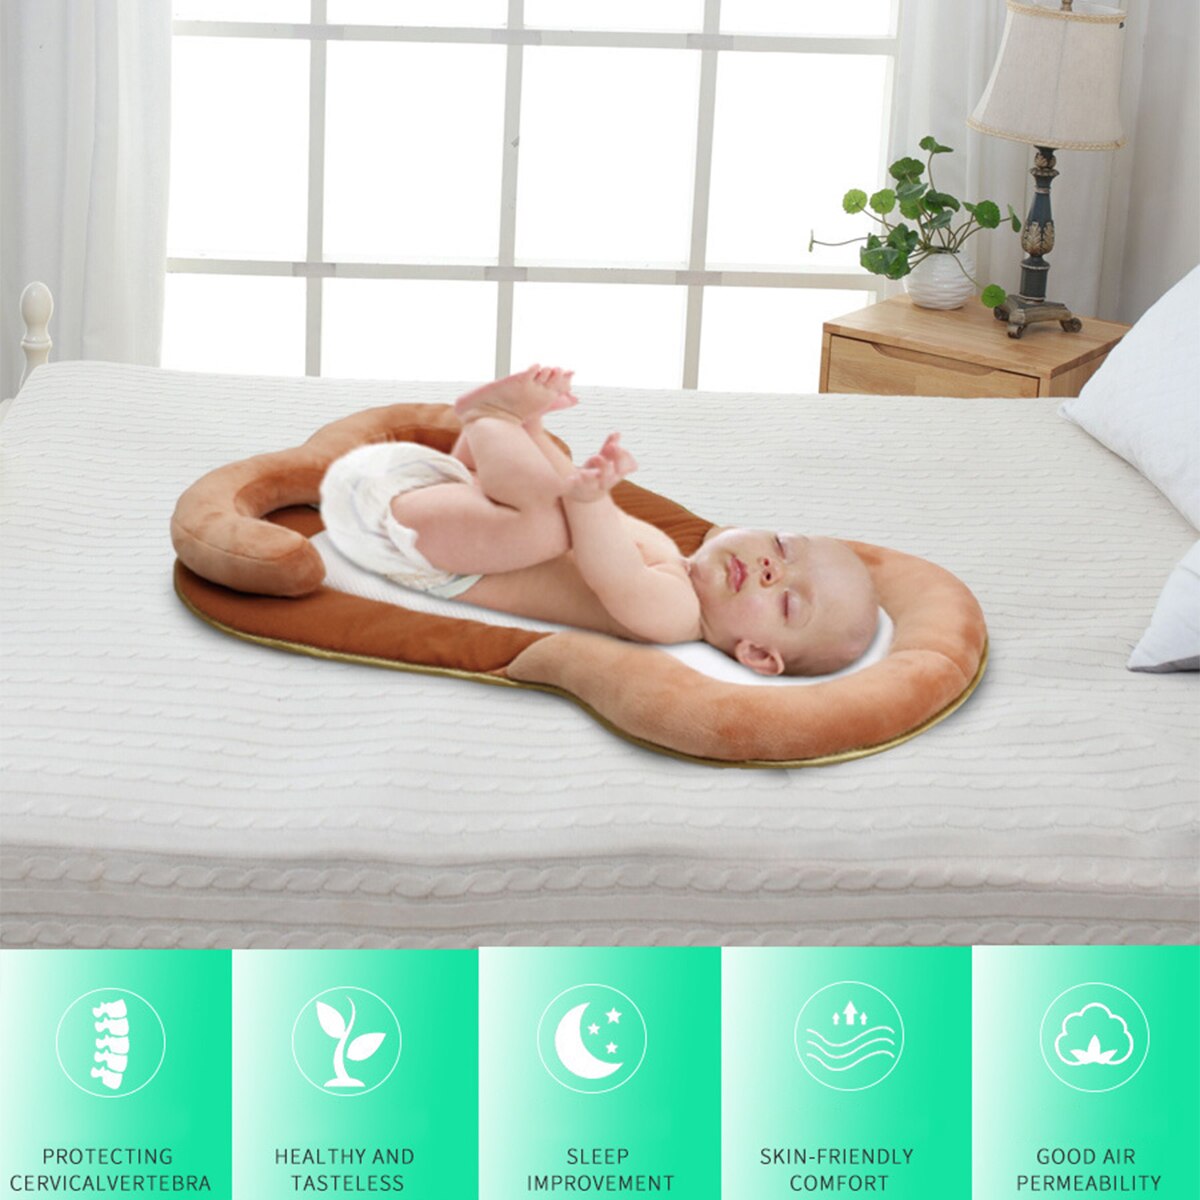 Bærbar barneseng seng reden sammenfoldelig børnehave rejseseng nyfødt baby pude anti-rollover madras spædbarn babynest